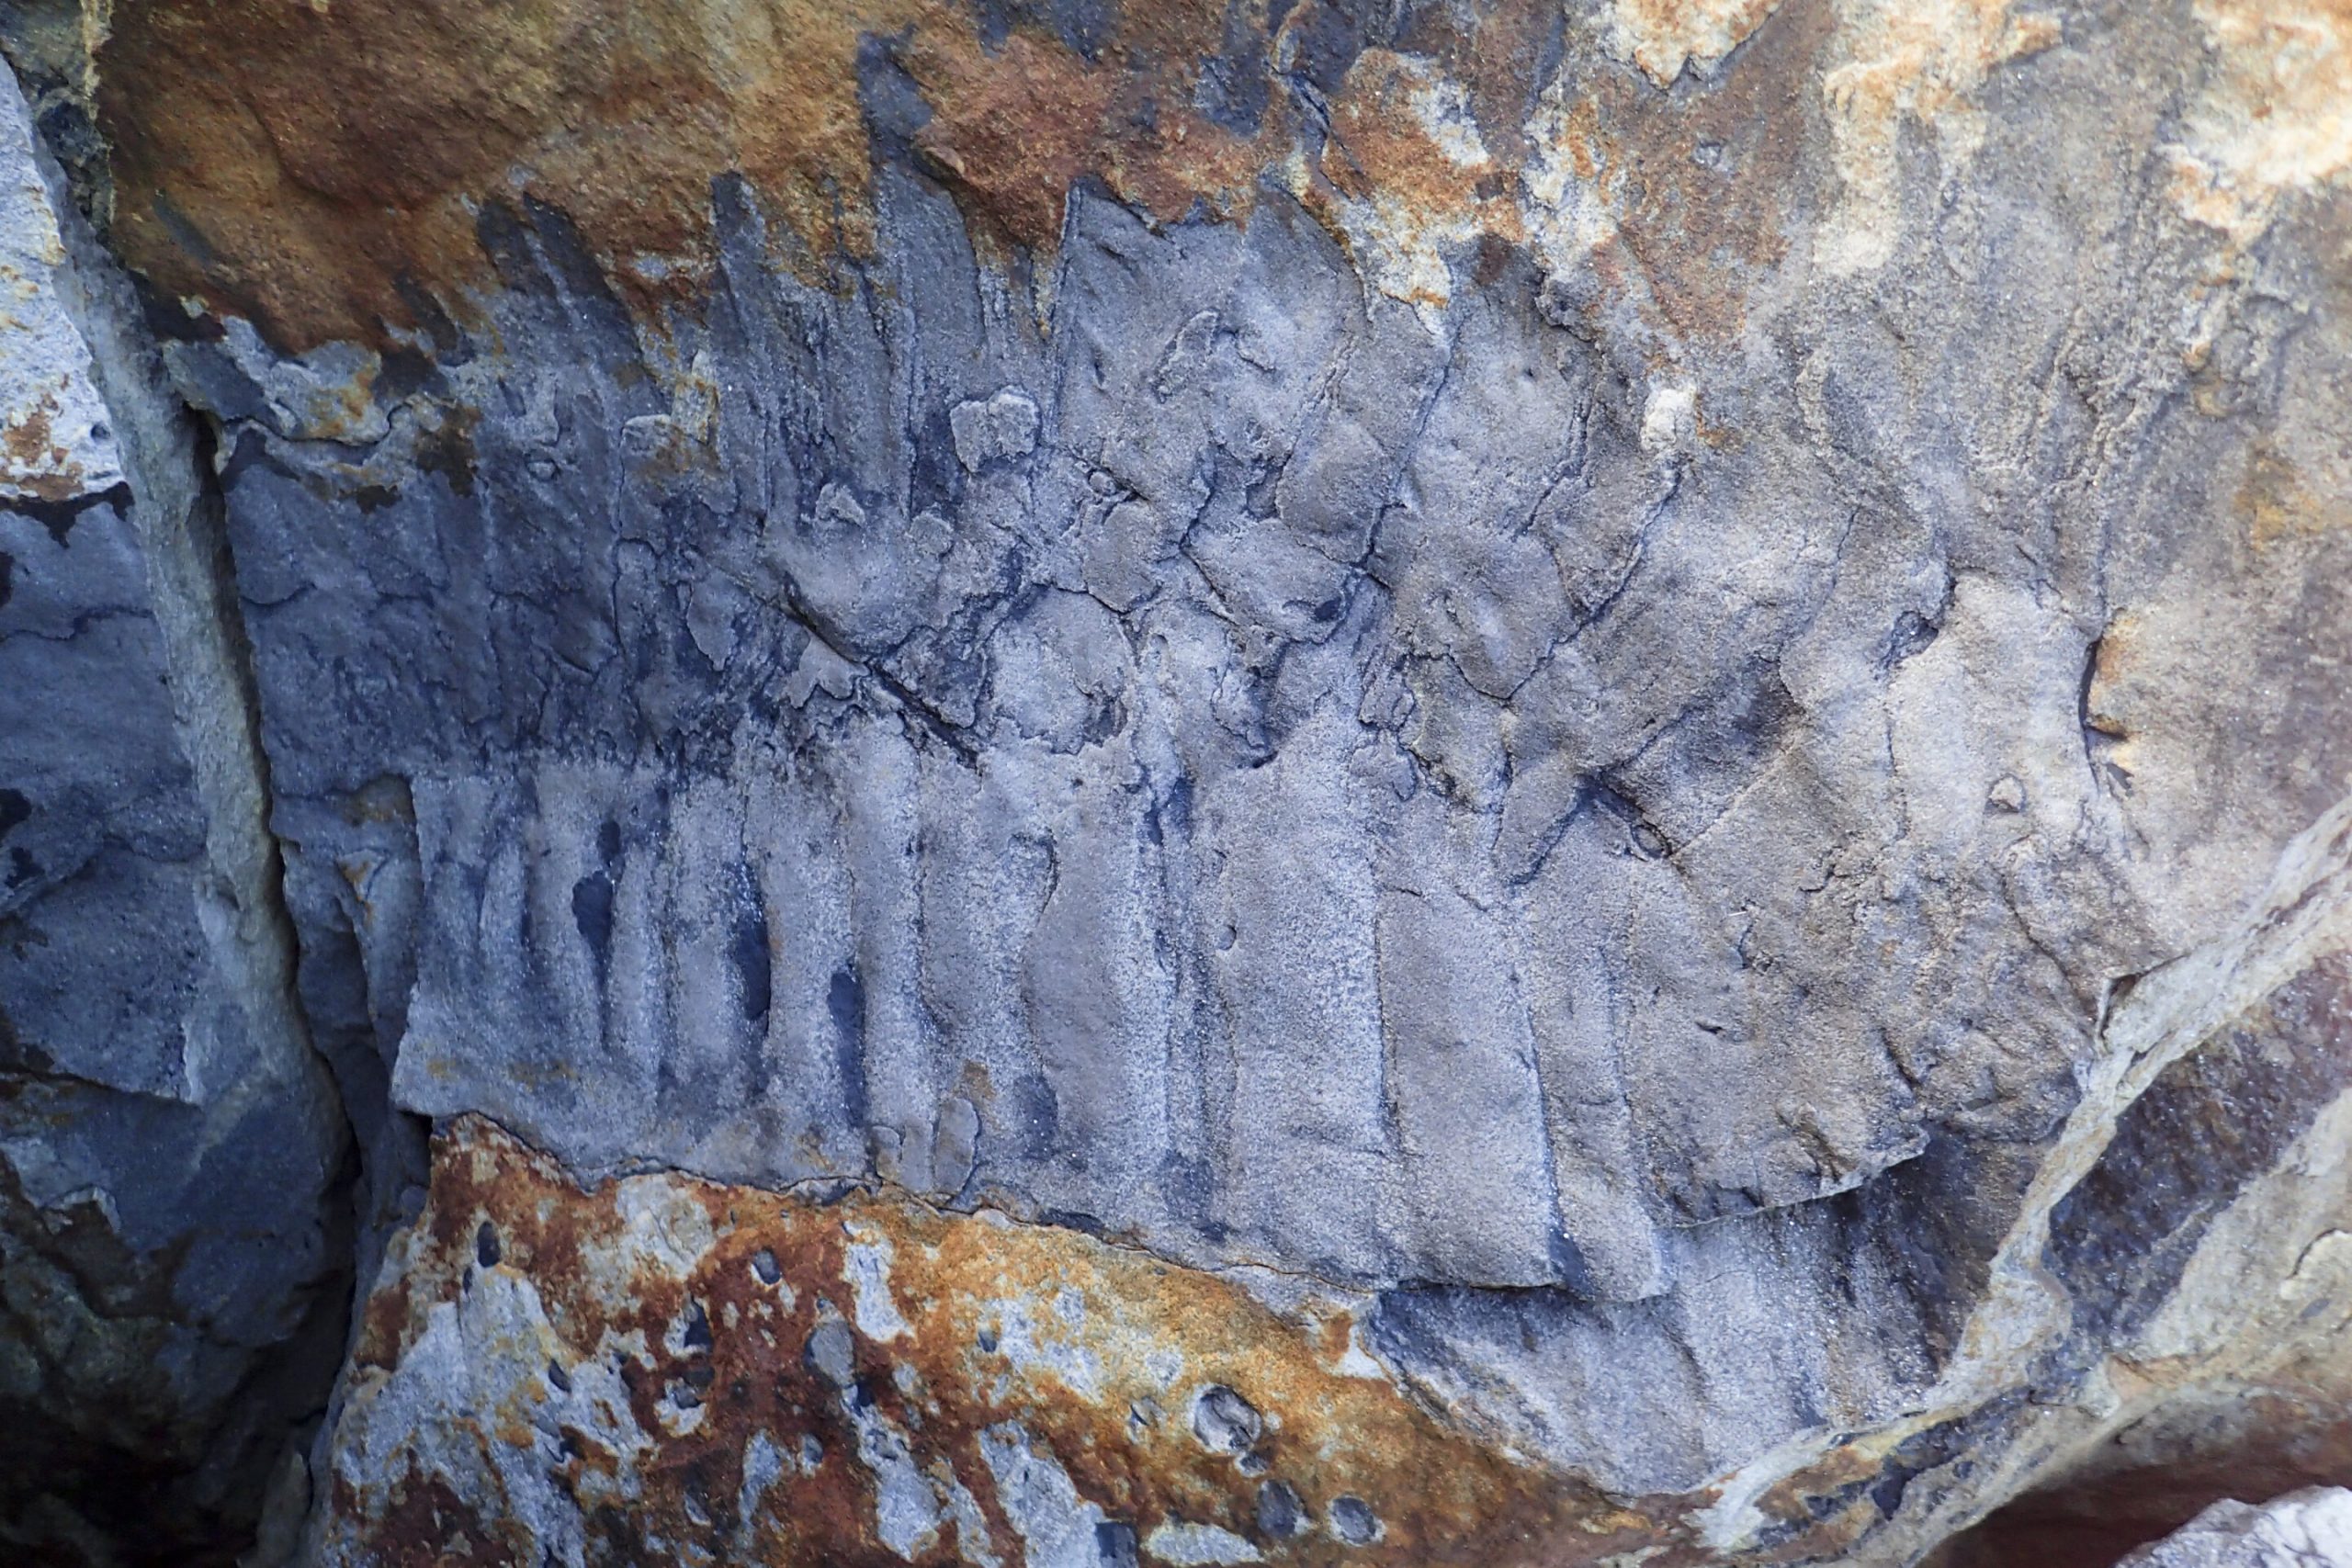 Βρετανία – Ανακαλύφθηκε το μεγαλύτερο αρθρόποδο που έχει βρεθεί ποτέ στη Γη